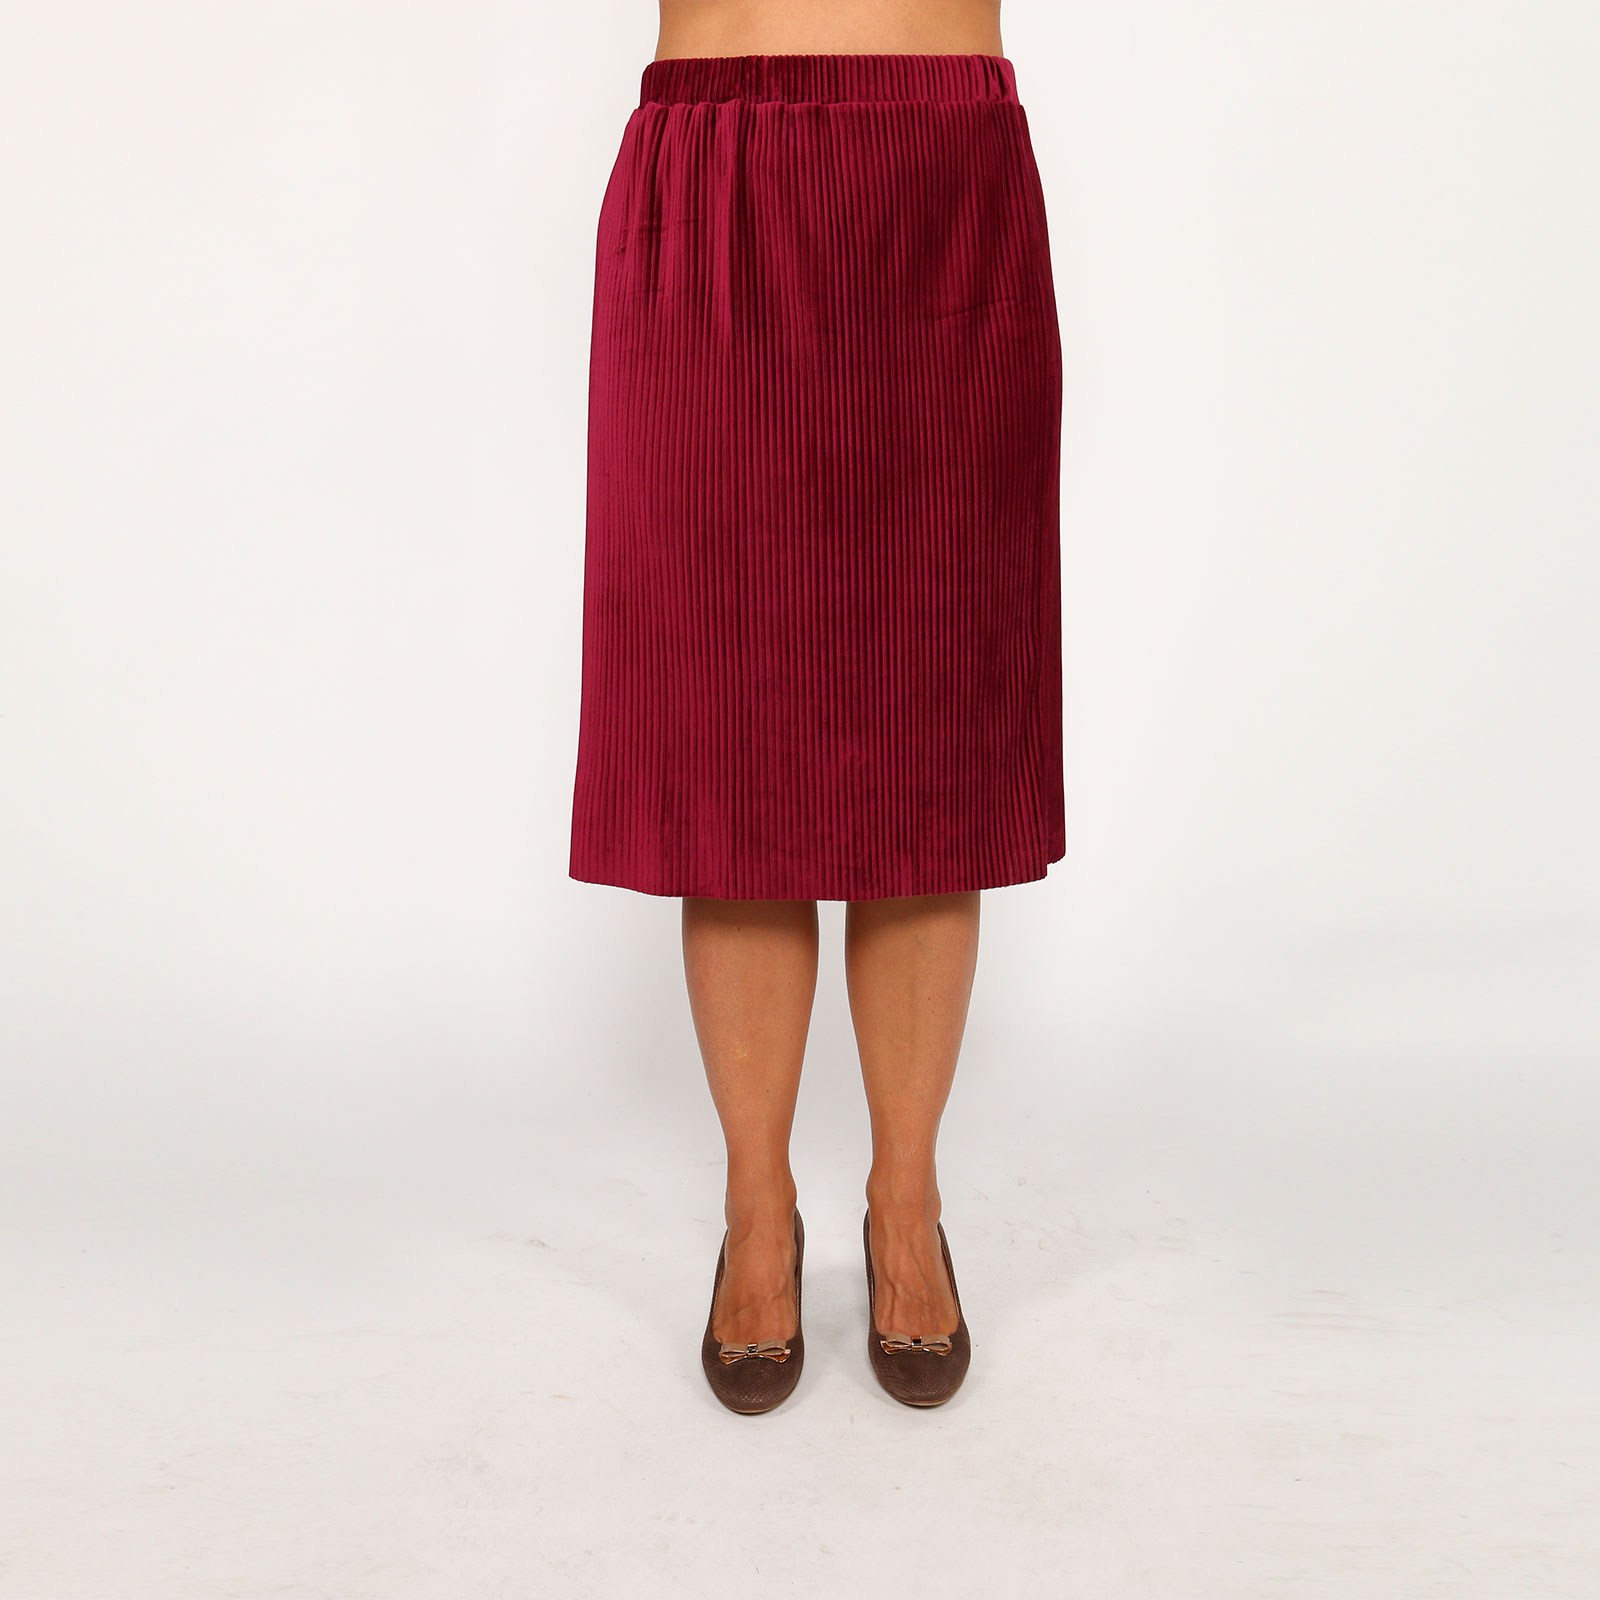 Юбка-миди из бархатной ткани Lina, размер 58, цвет красный - фото 2